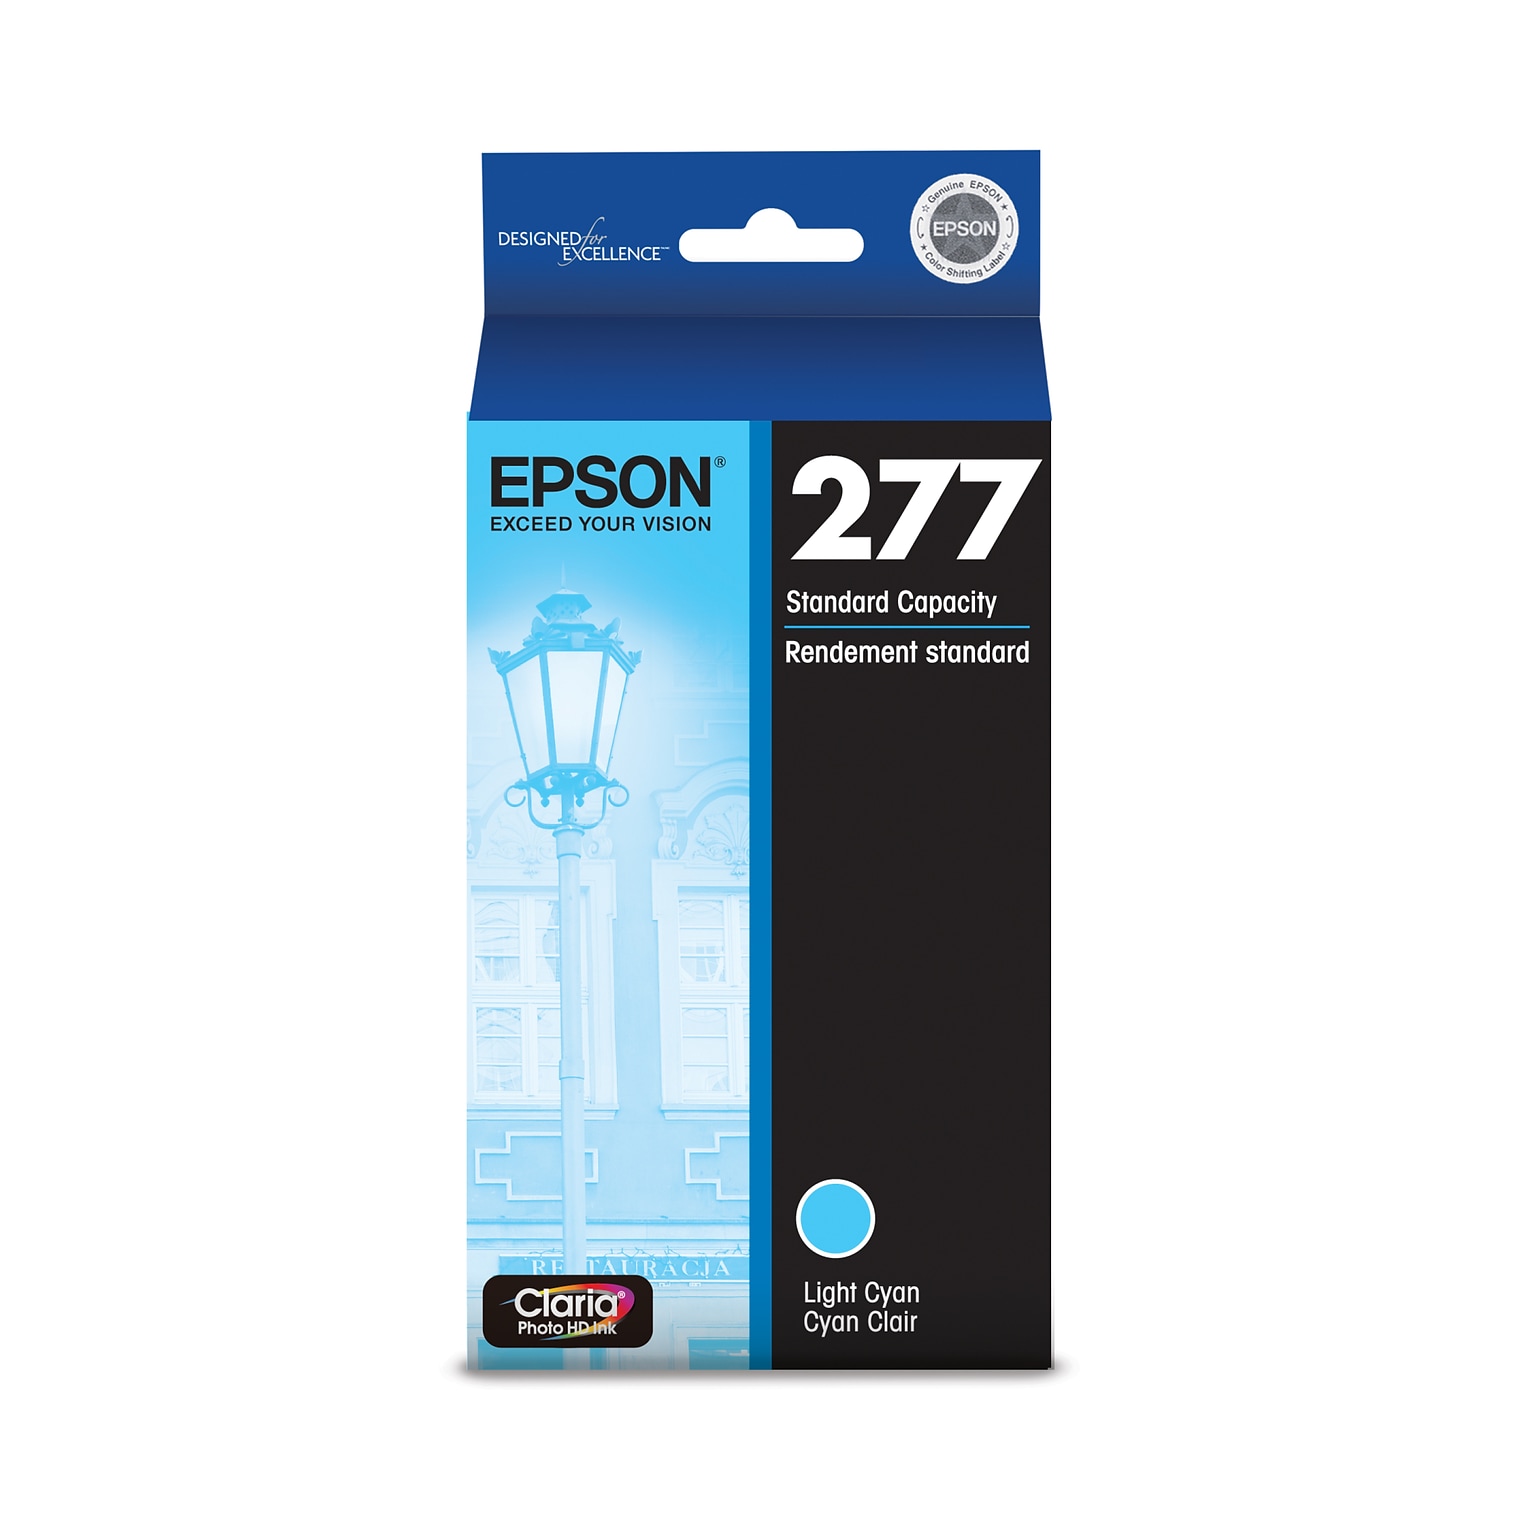 Epson 277 Light Cyan Standard Yield Ink Cartridge